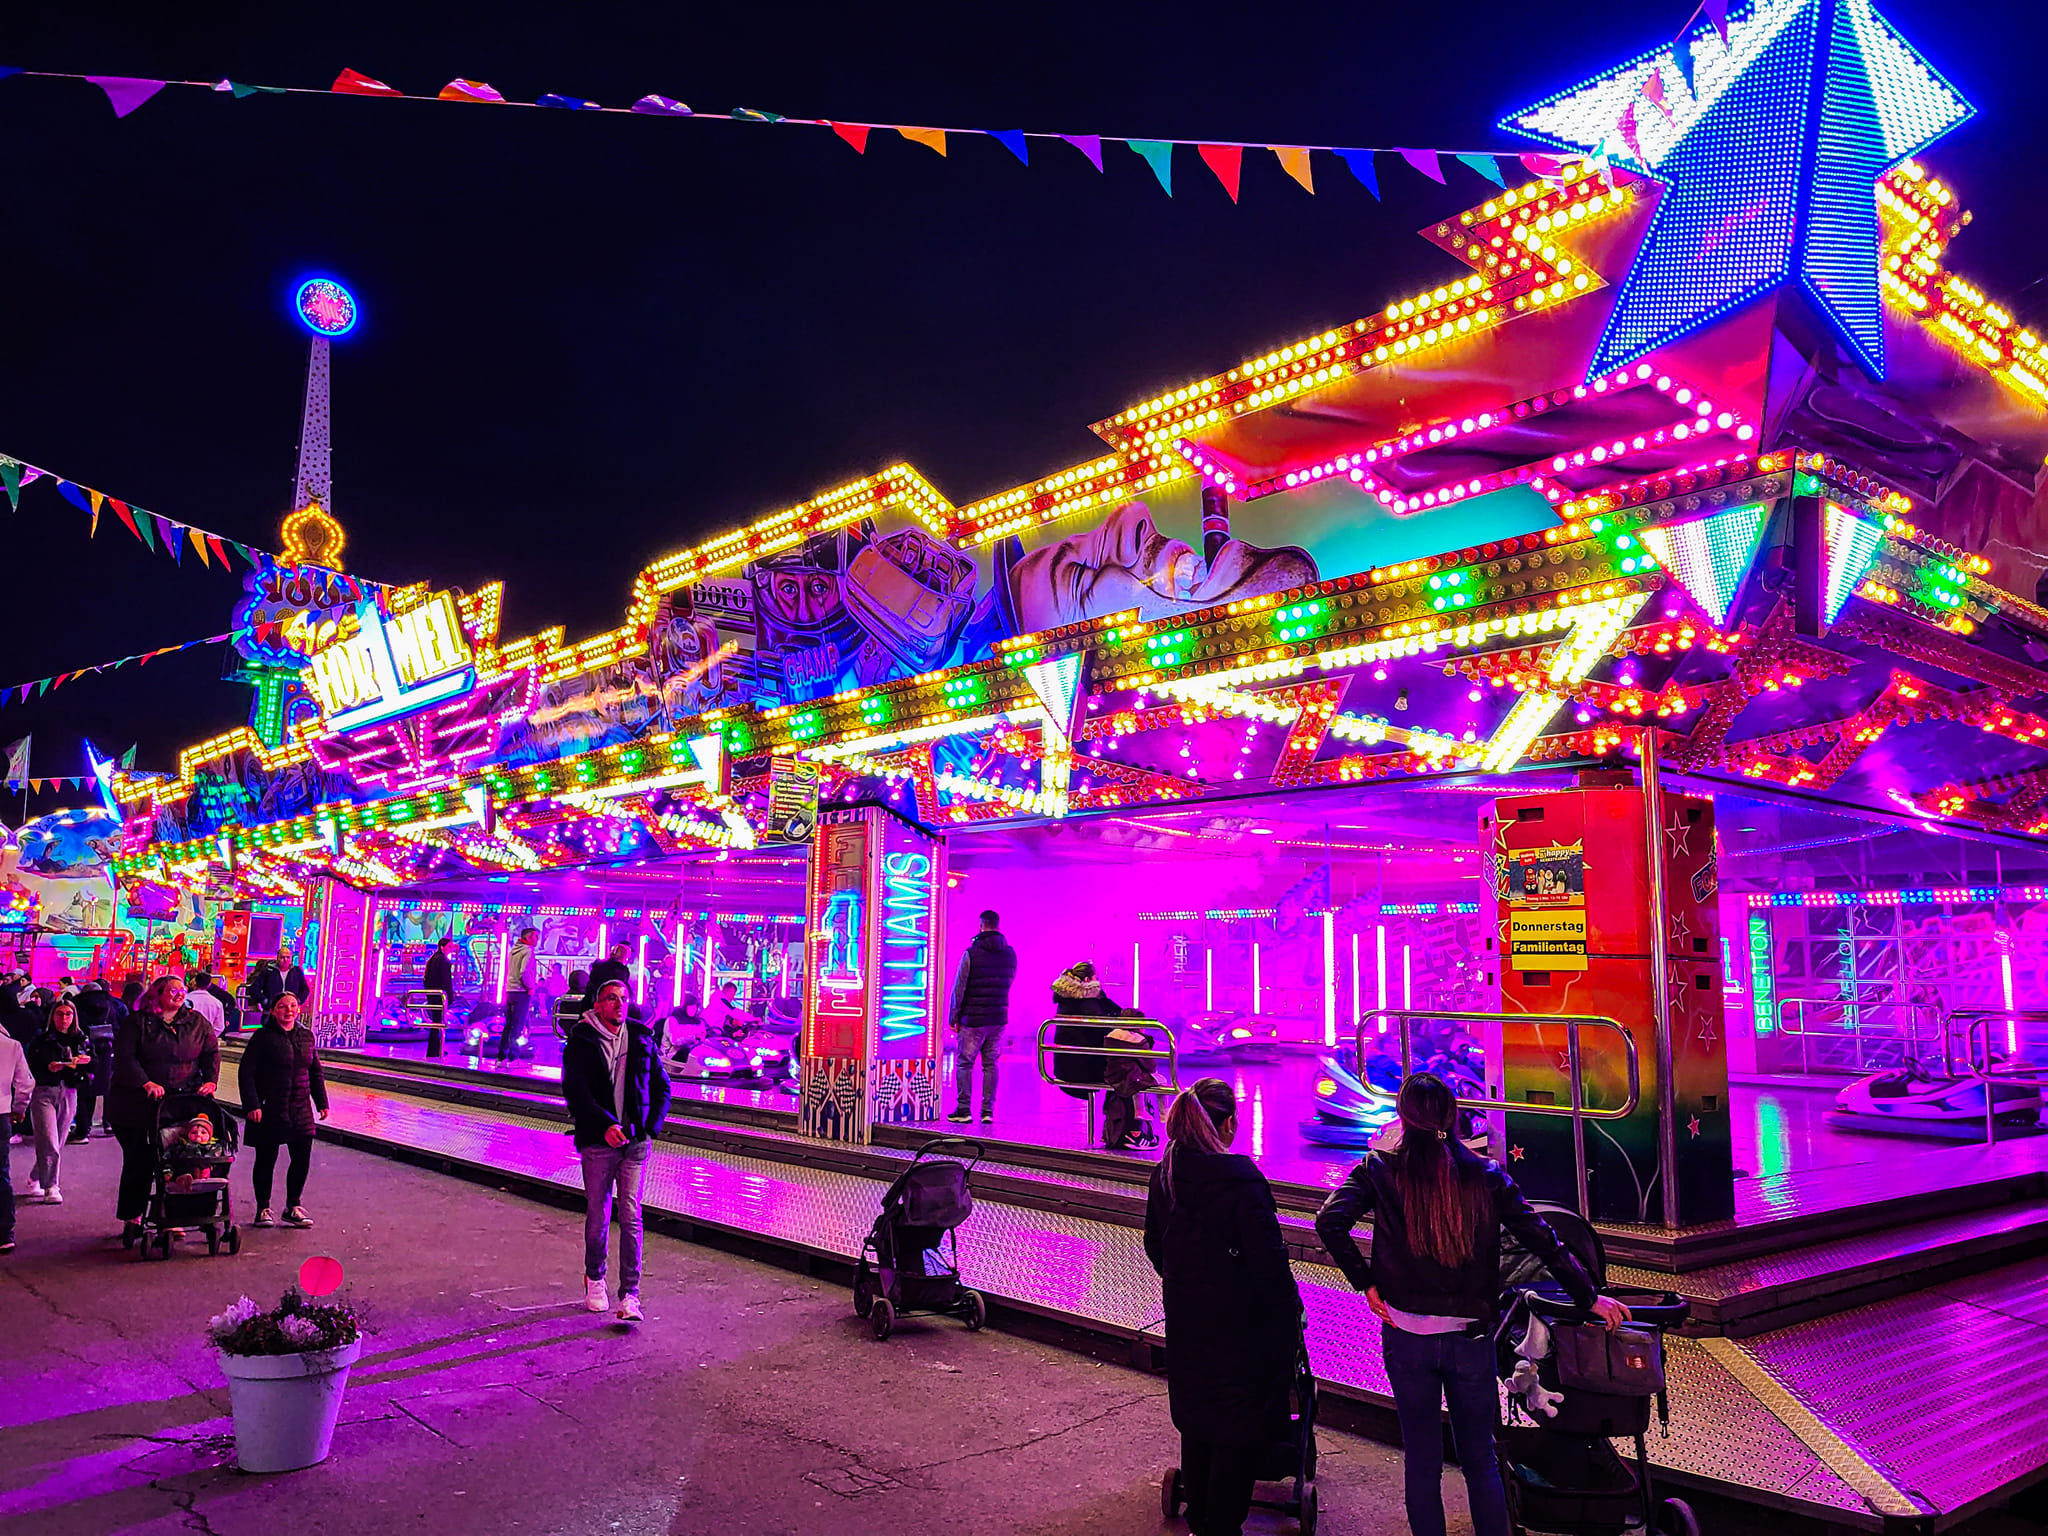 LED carnival lighting